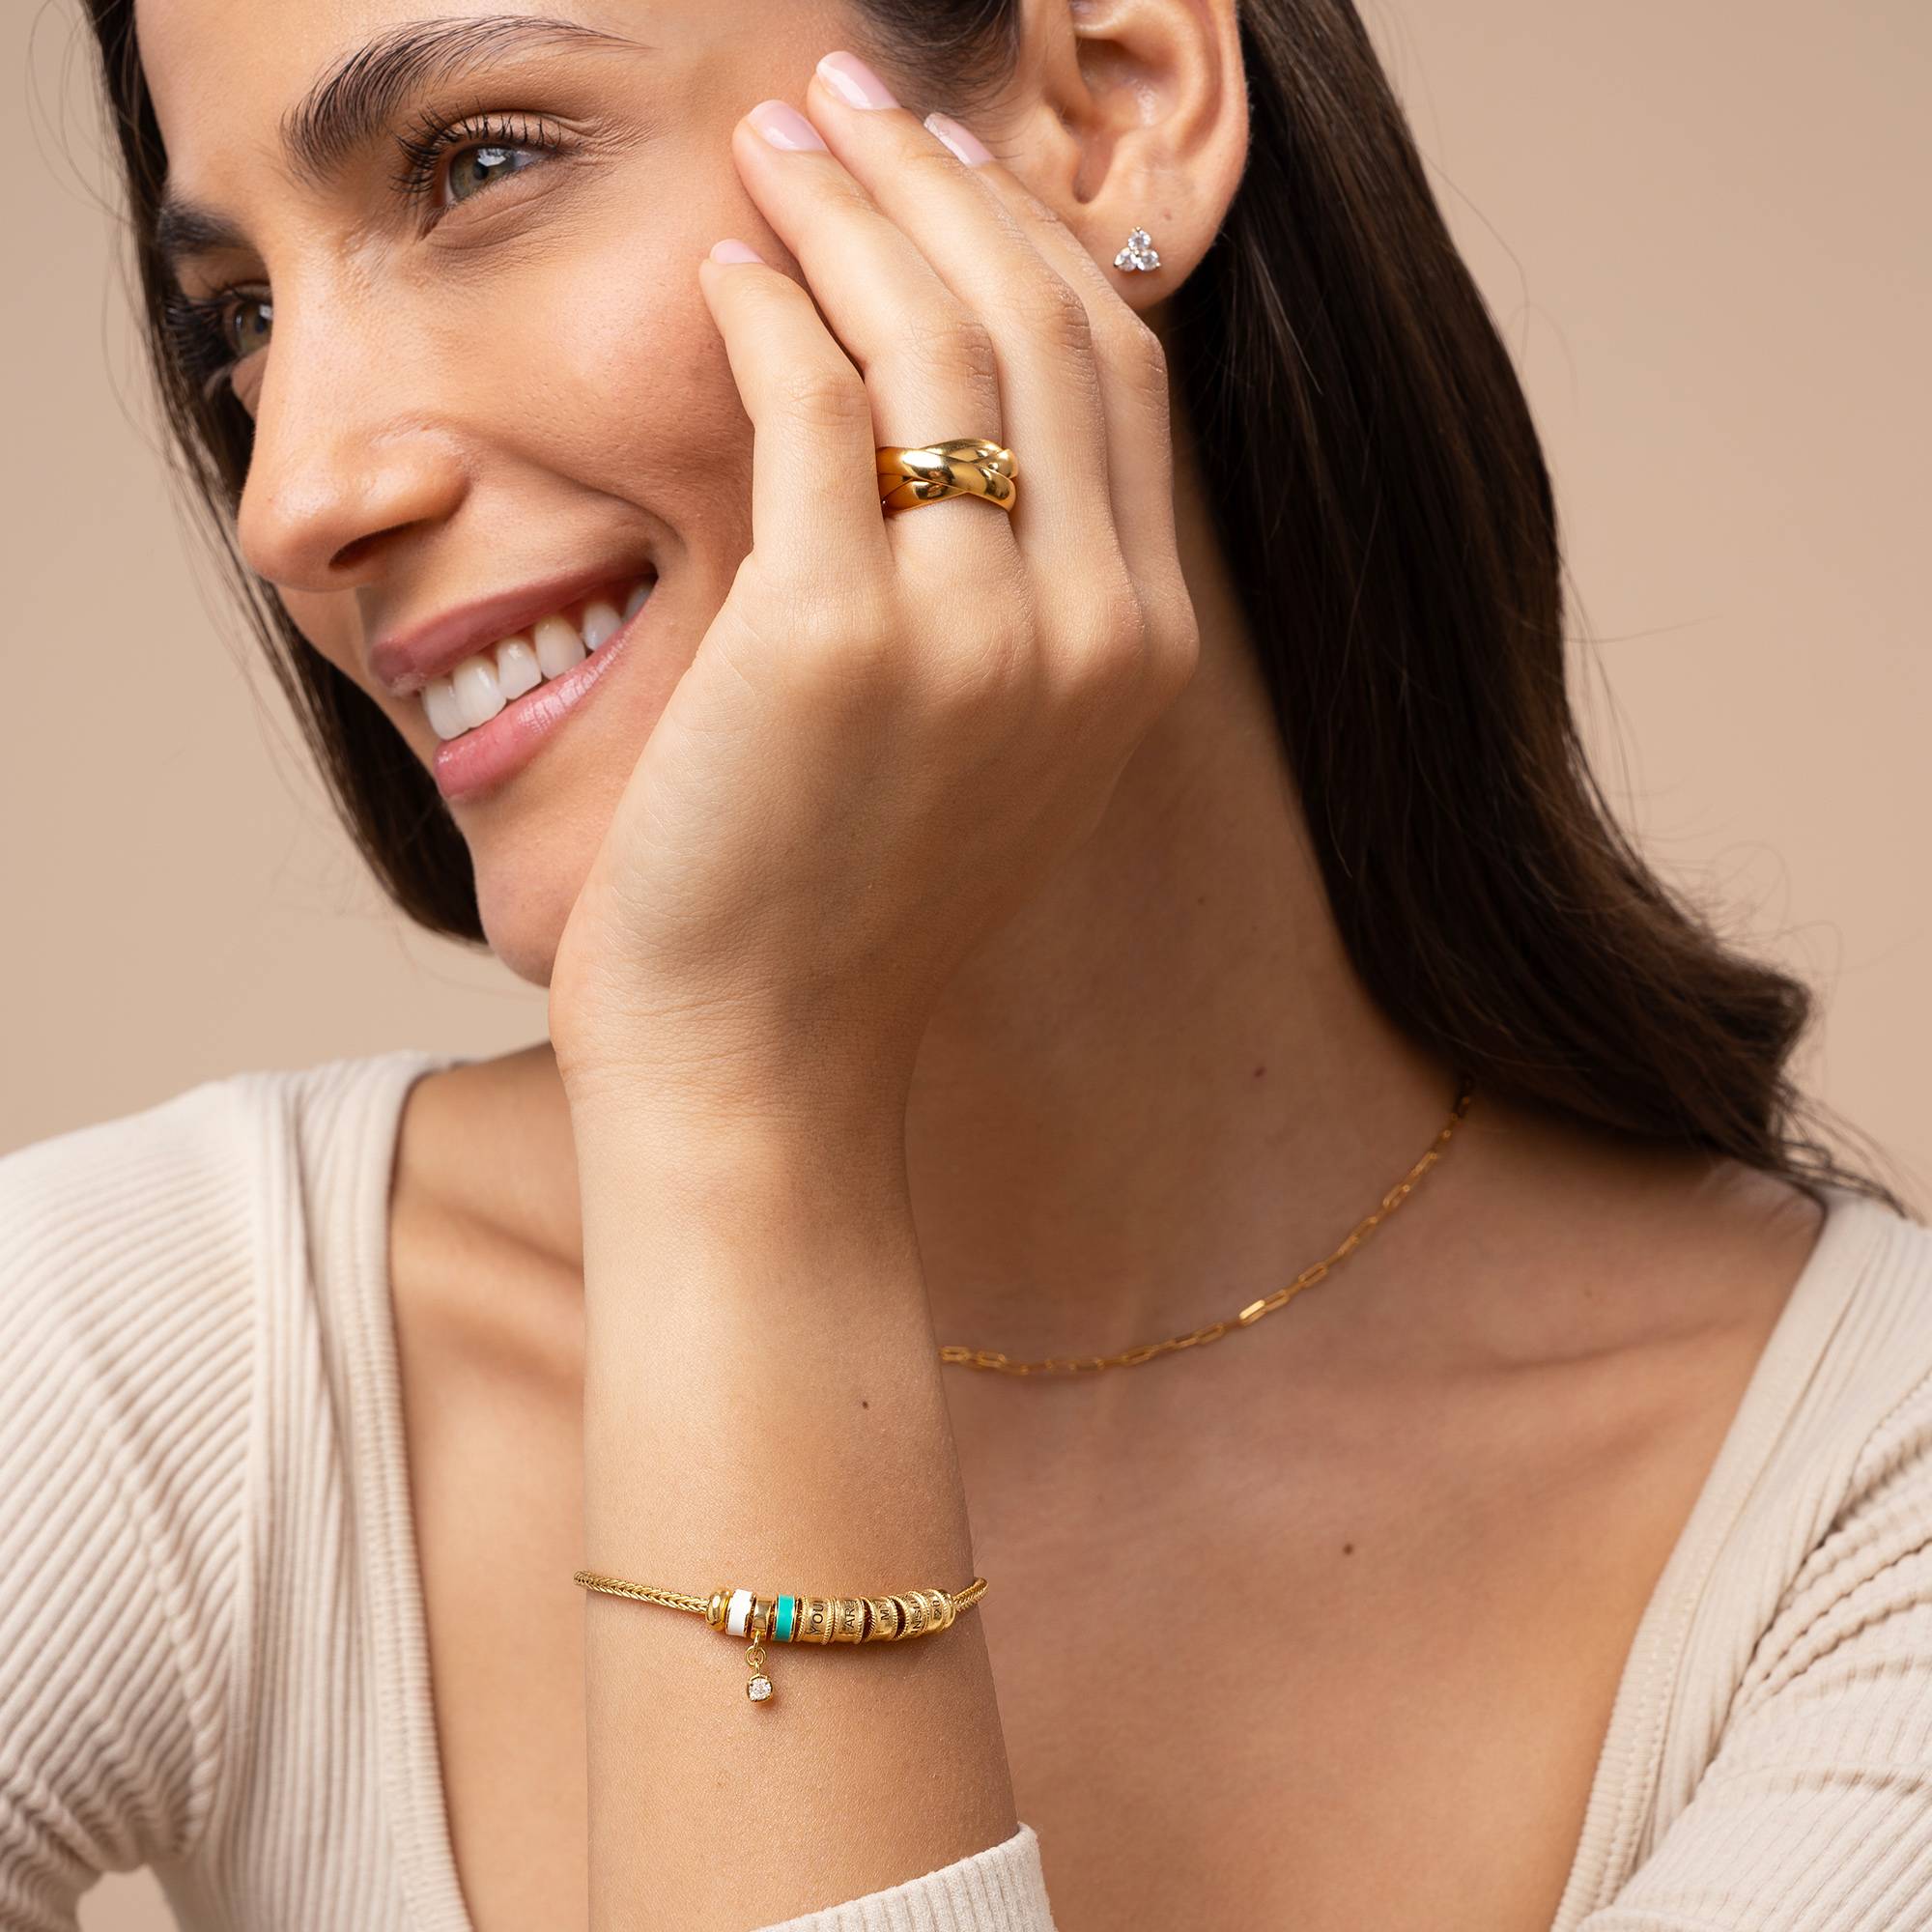 Linda Armband met Hartvormig Slotje, Diamant & emaille kralen in 18k Goud Vermeil-5 Productfoto